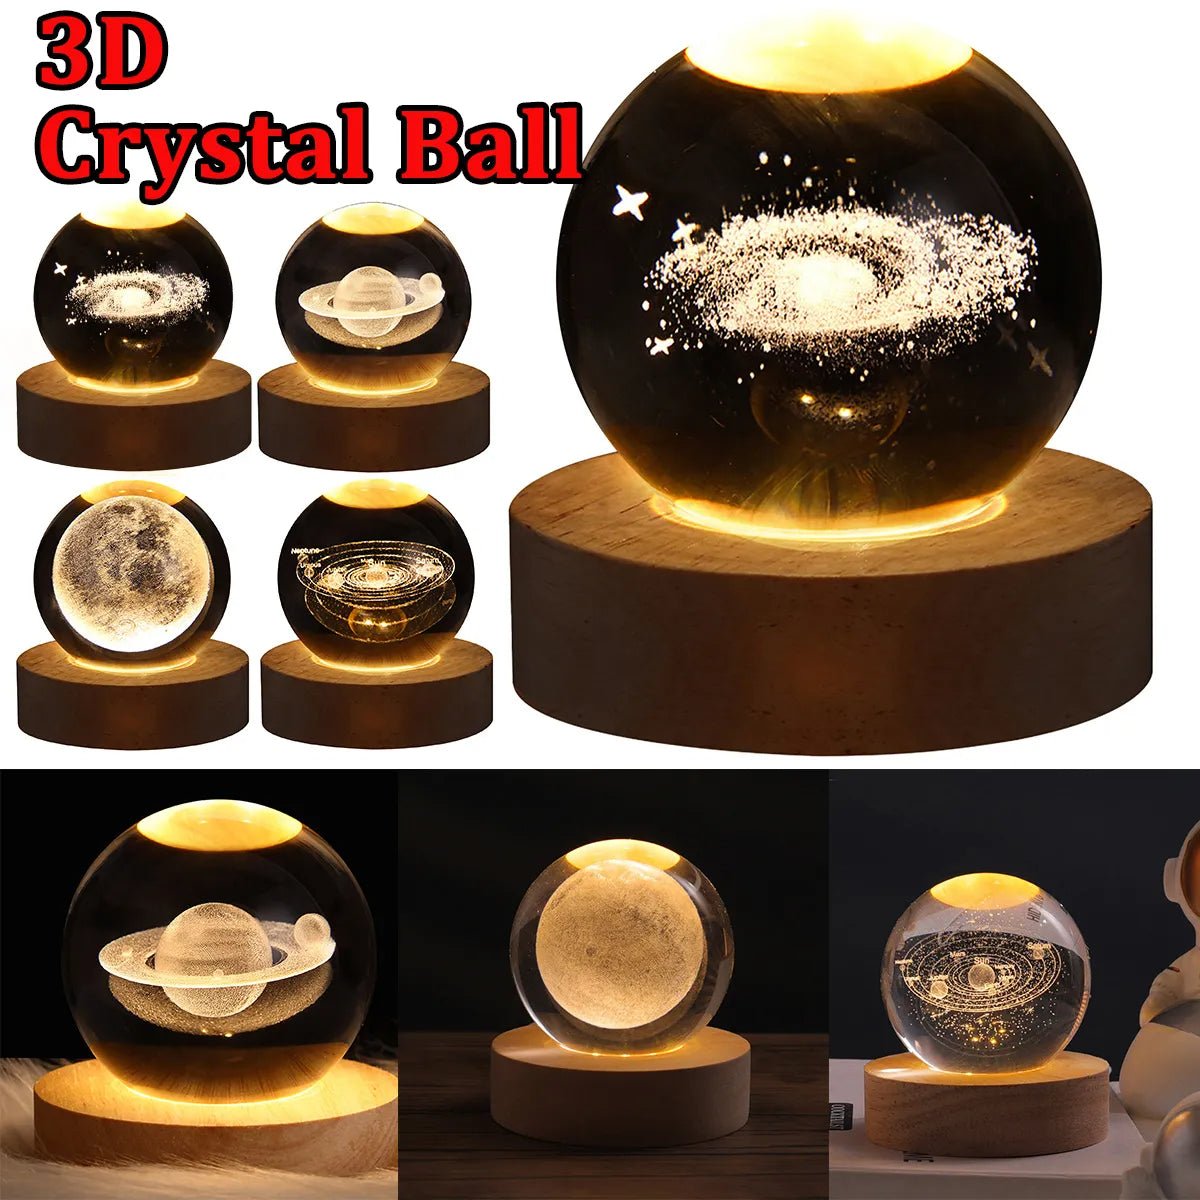 3D Astro Crystal Ball